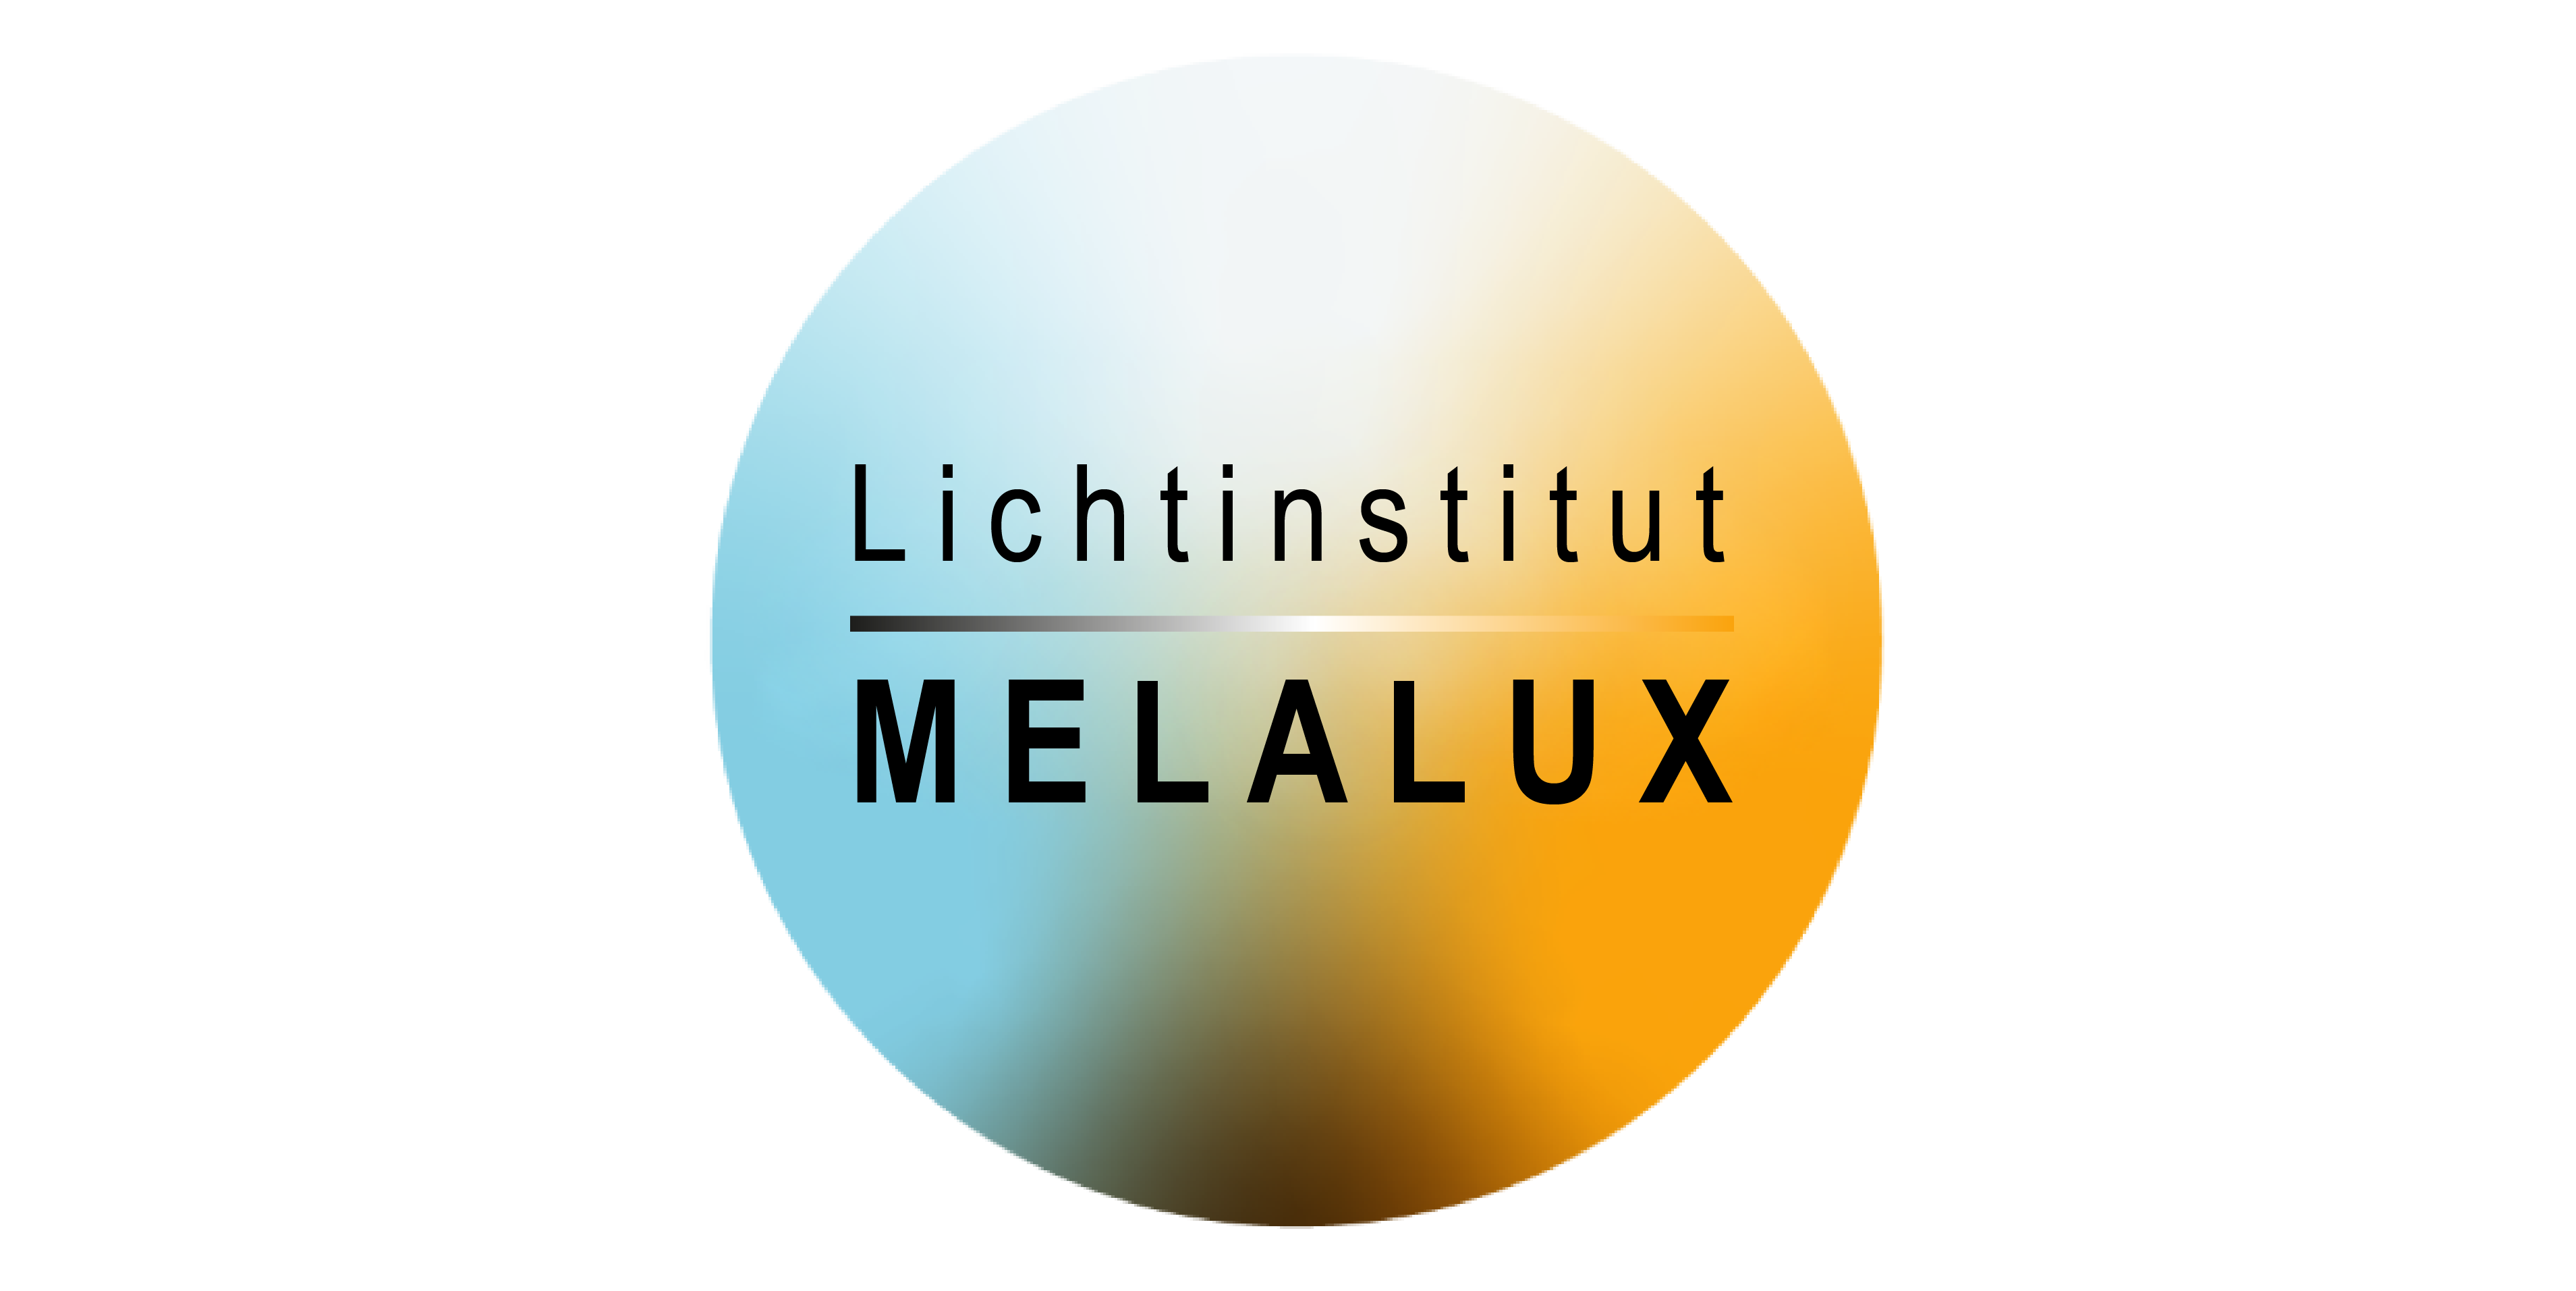 Lichtinstitut Melalux